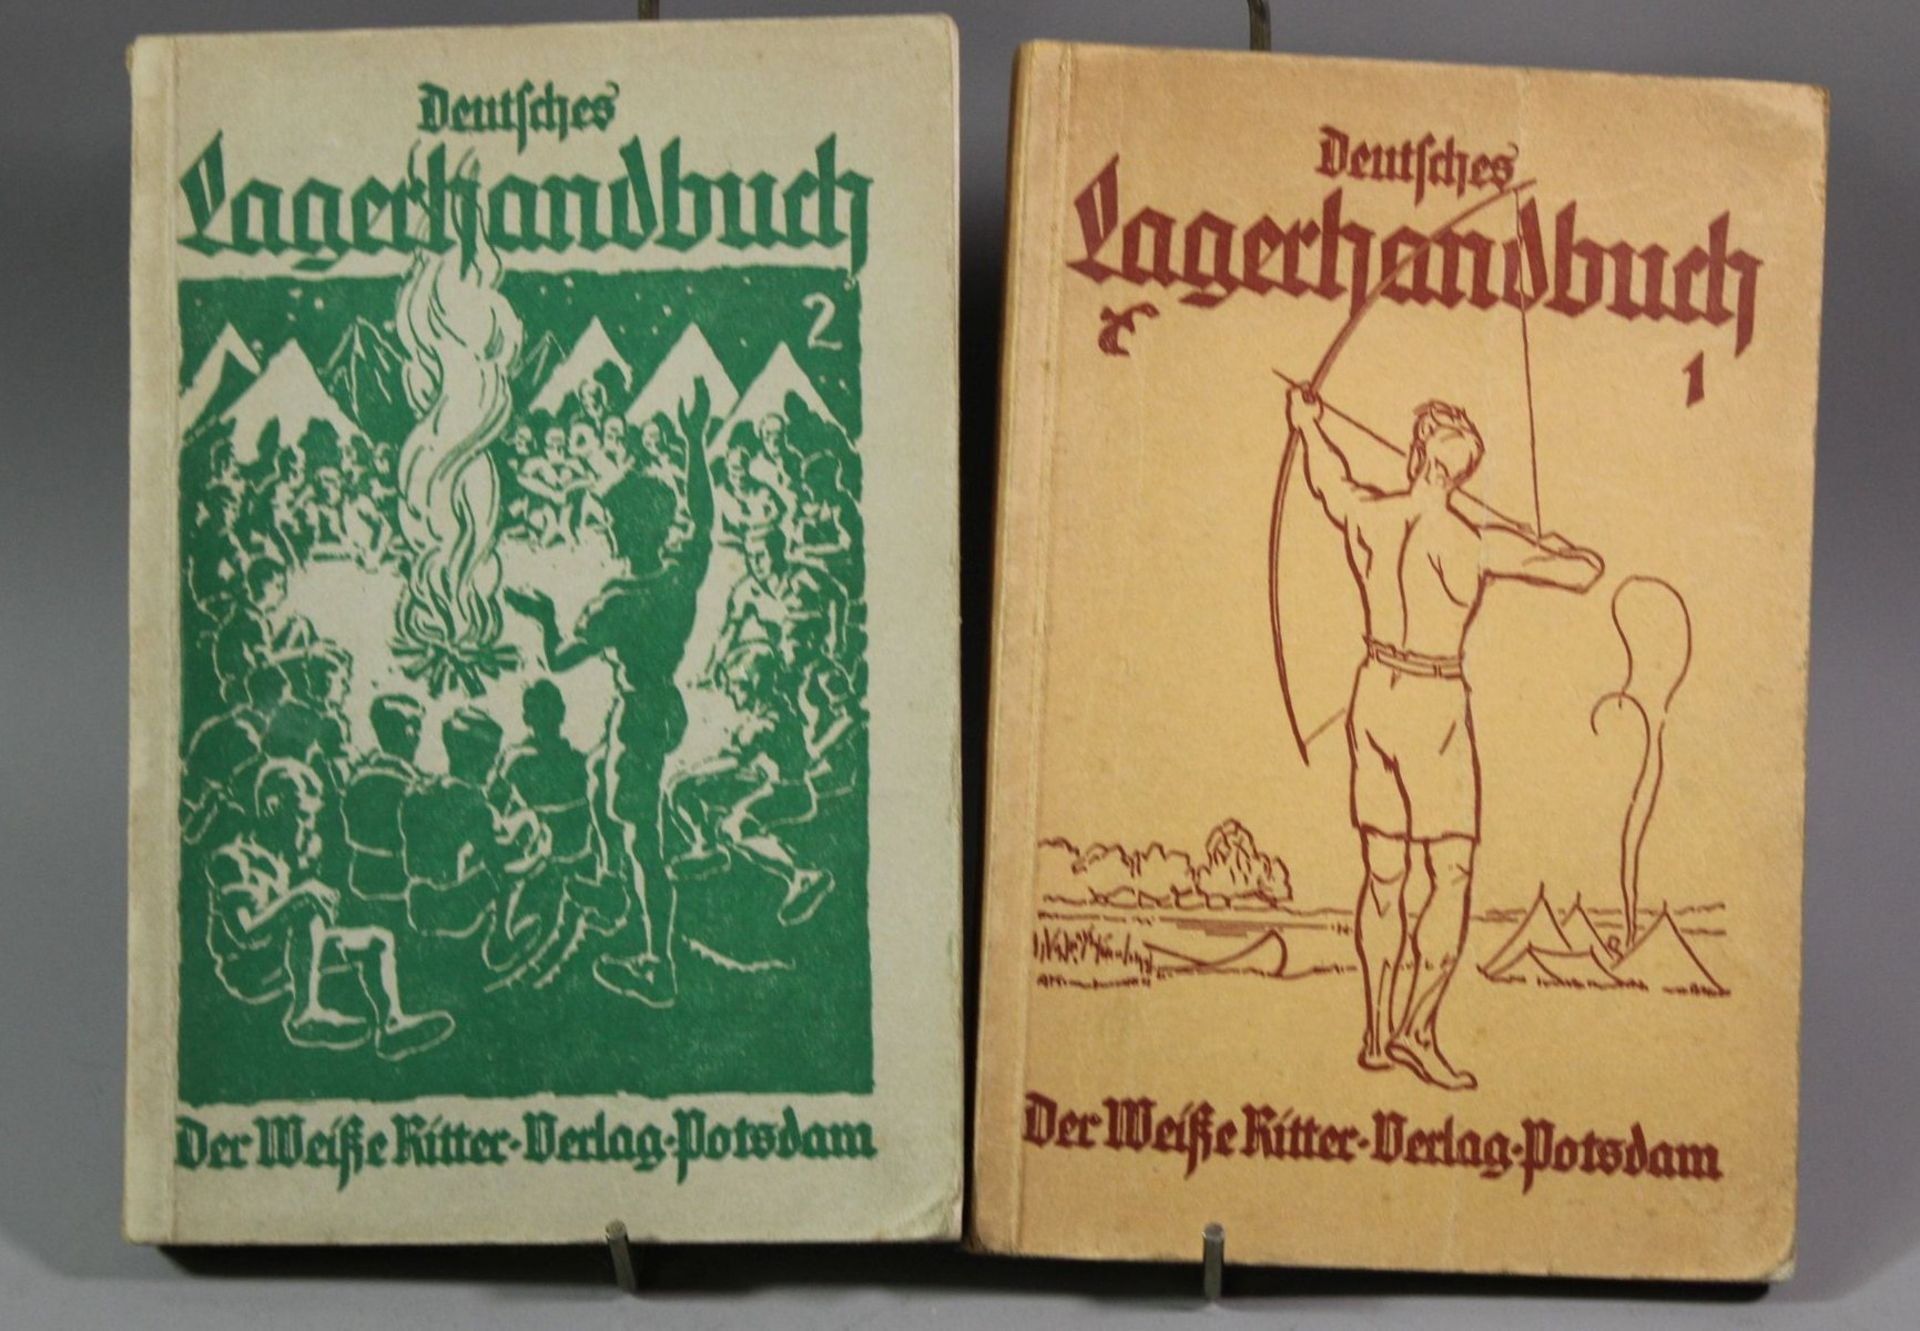 2 Bände, Deutsches Lagerhandbuch, 1926/27, Der weisse Ritter Verlag Potsdam, Paperback.